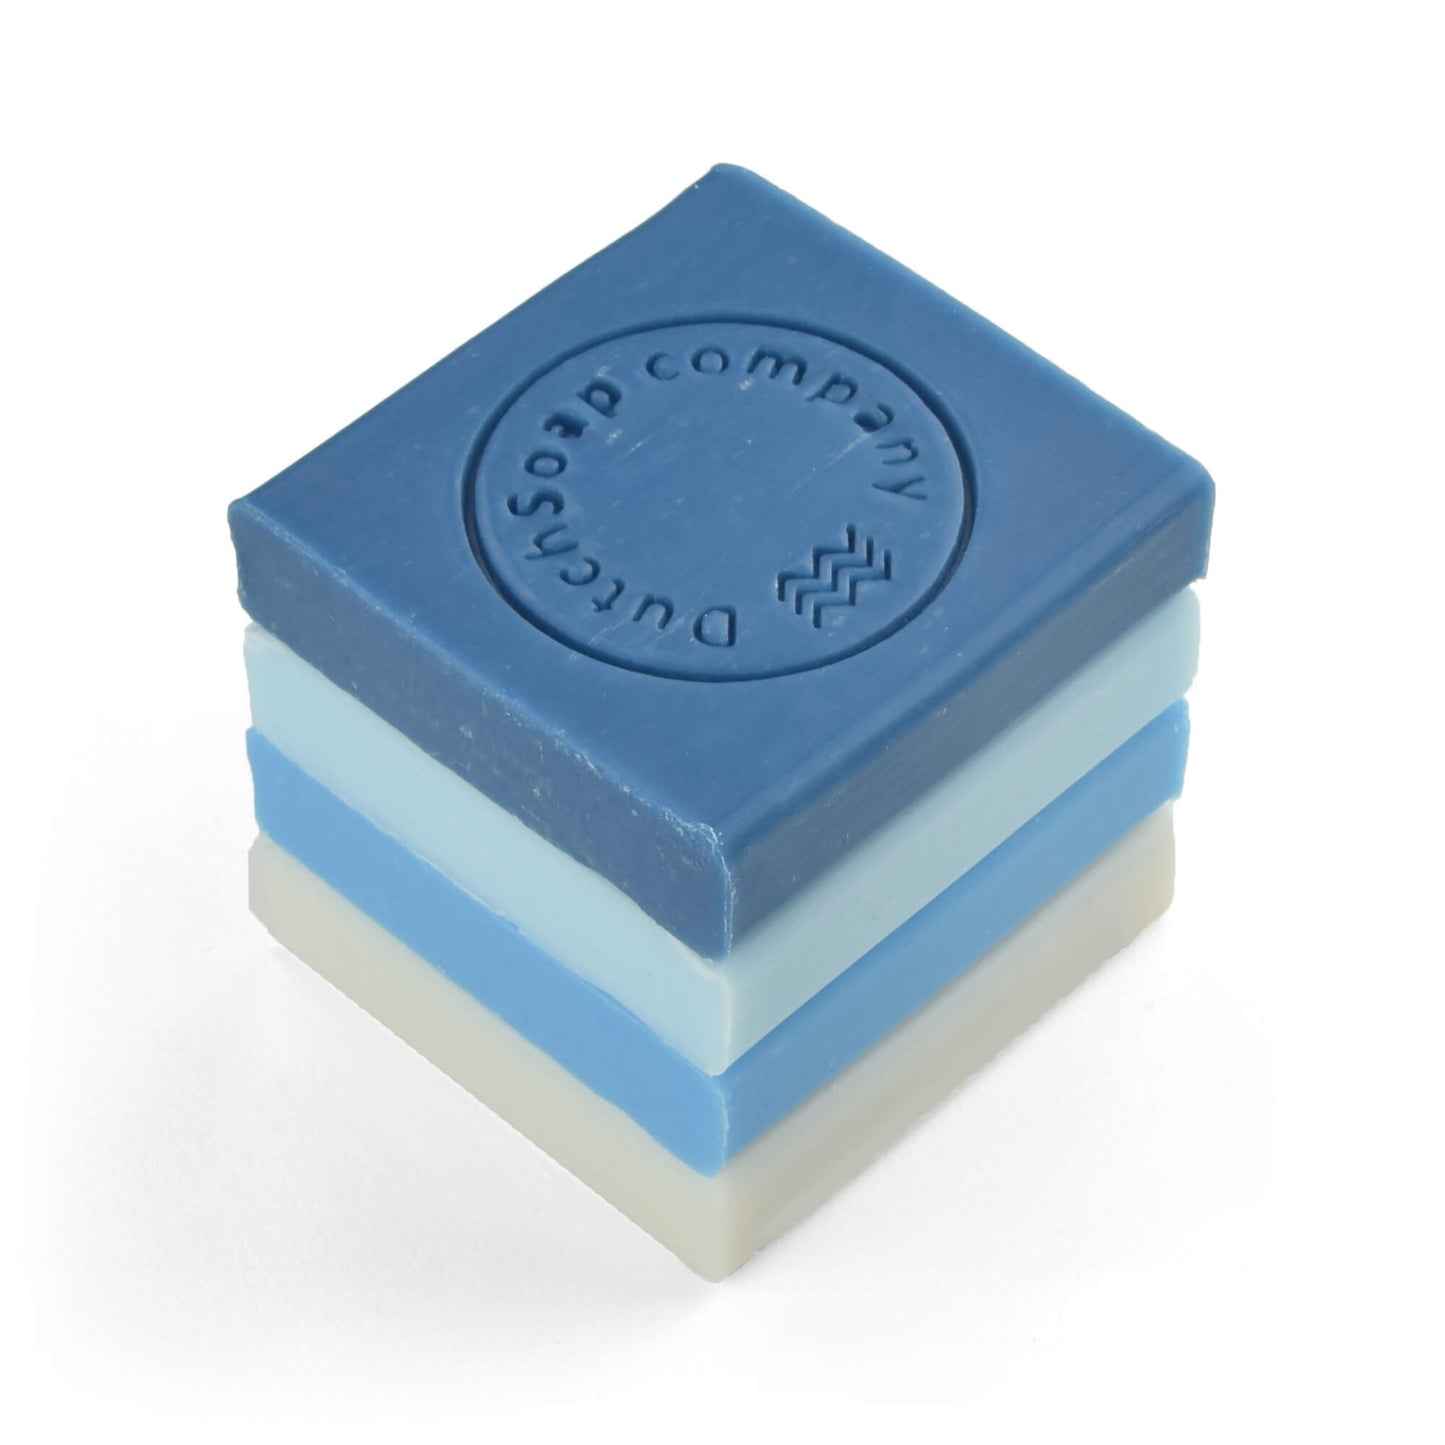 Soap Selection Box: 'Aqua Selections' (4pc)